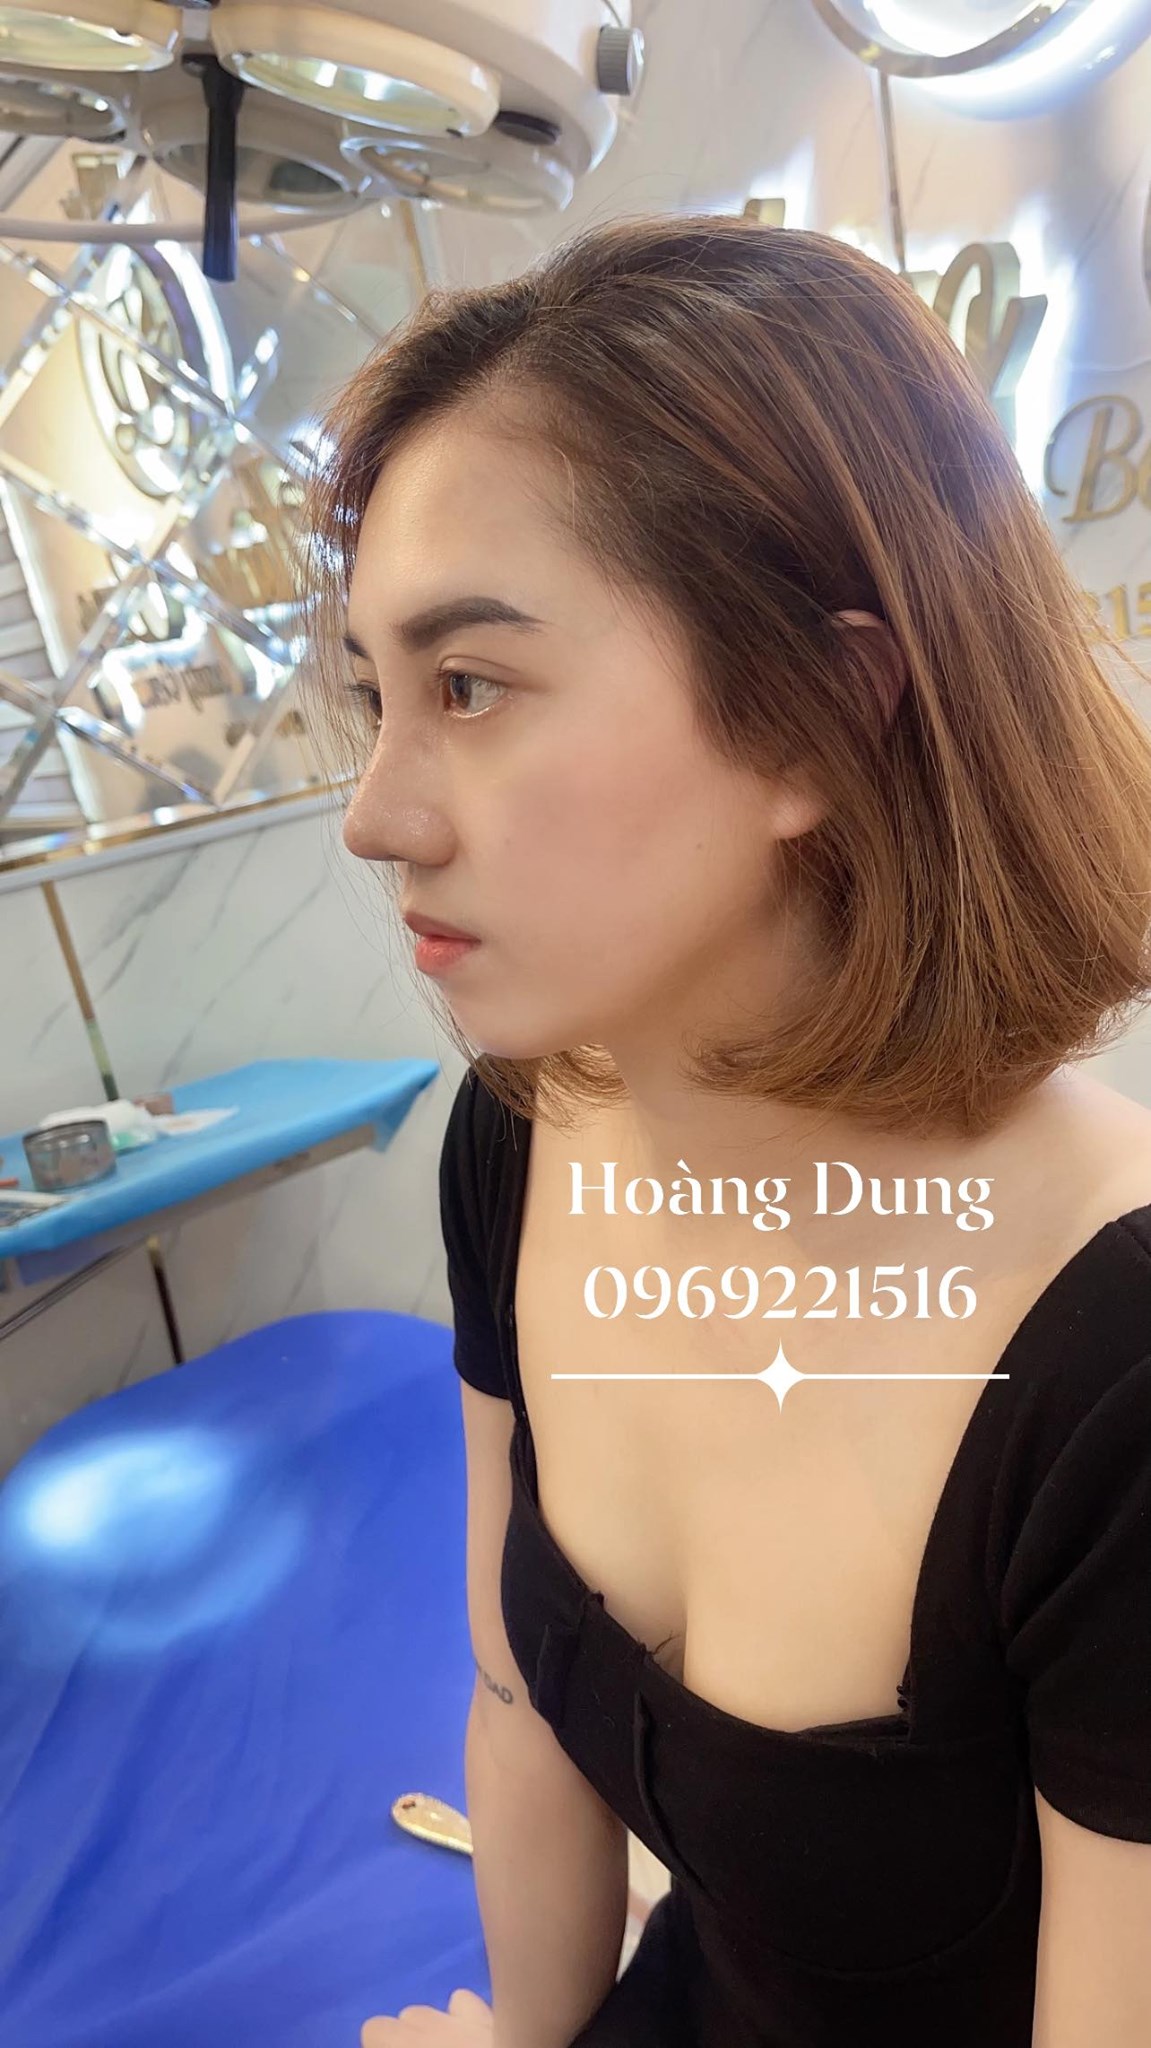 Hoàng Dung Beauty Center ảnh 2